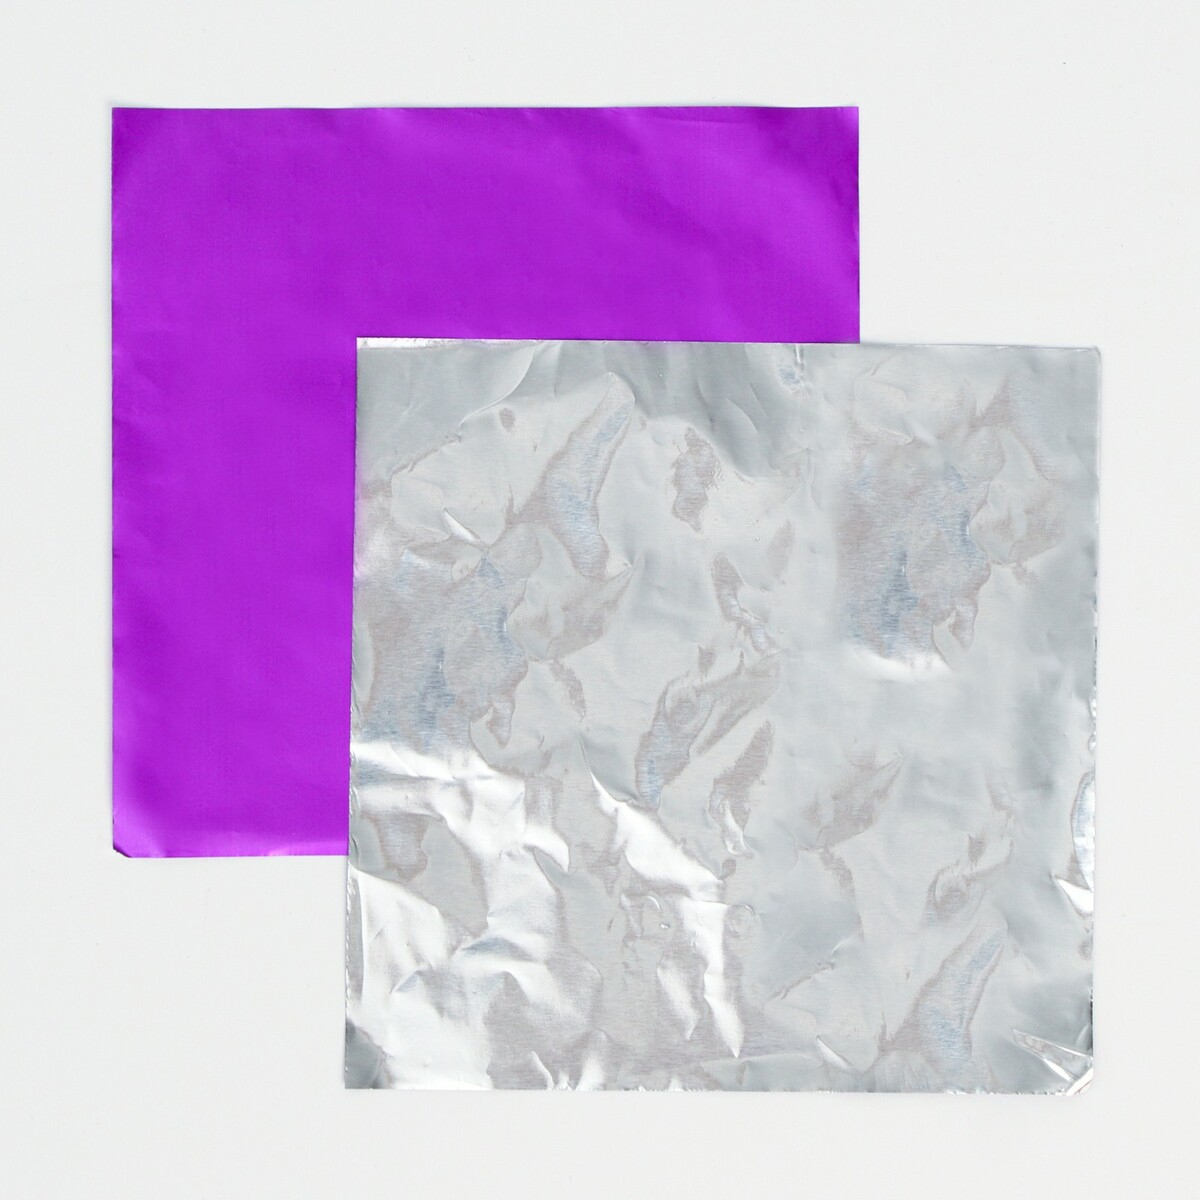 фото Фольга для конфет 10*10см 100шт., фиолетовый no brand